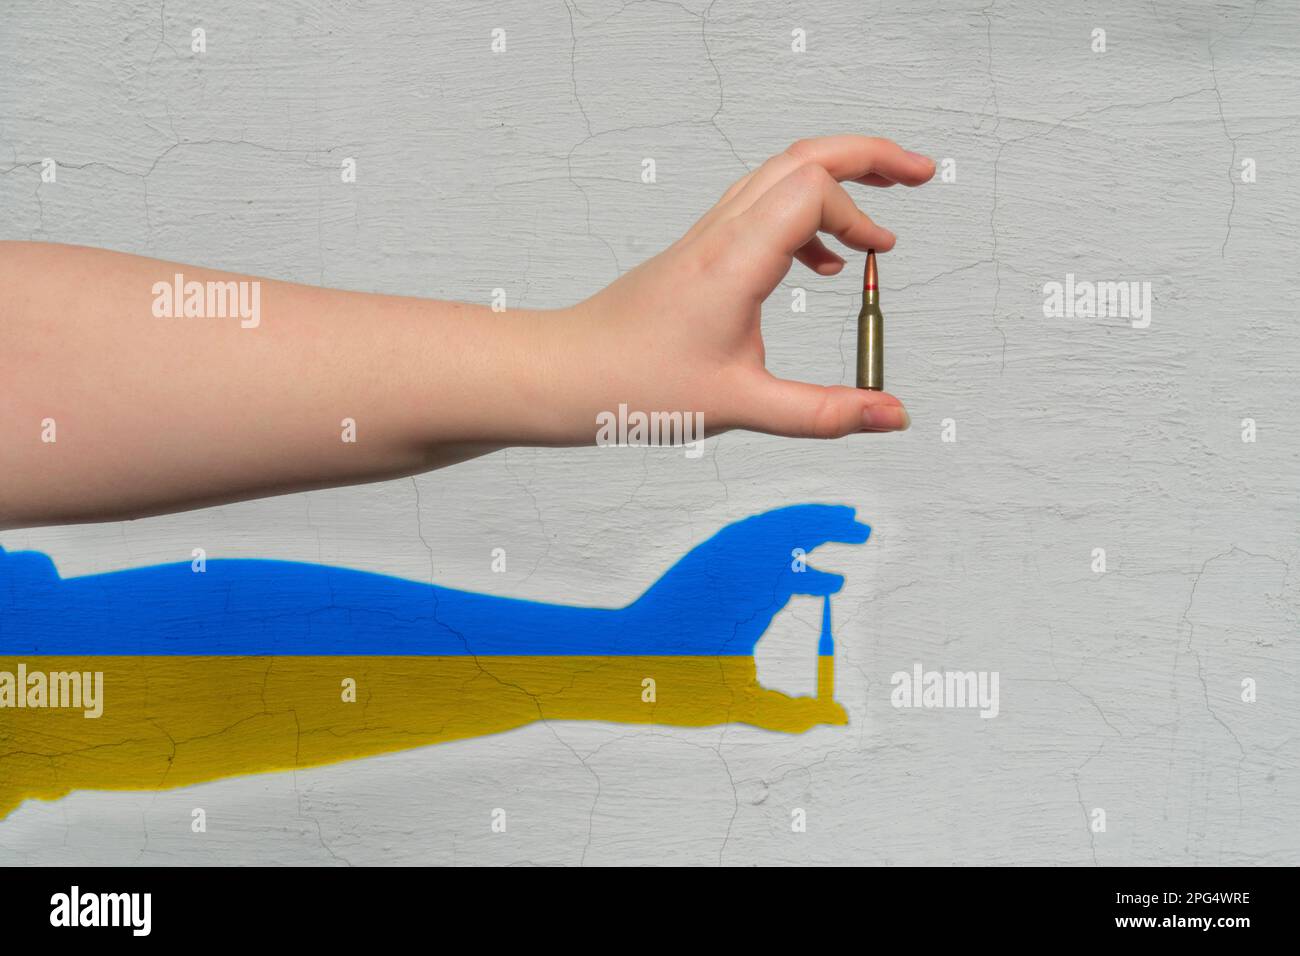 Cartuccia del fucile in mano. Ombra di colore giallo-blu (simboli nazionali dell'Ucraina) si forma sul muro. Il concetto di sostegno militare all'Ucraina Foto Stock